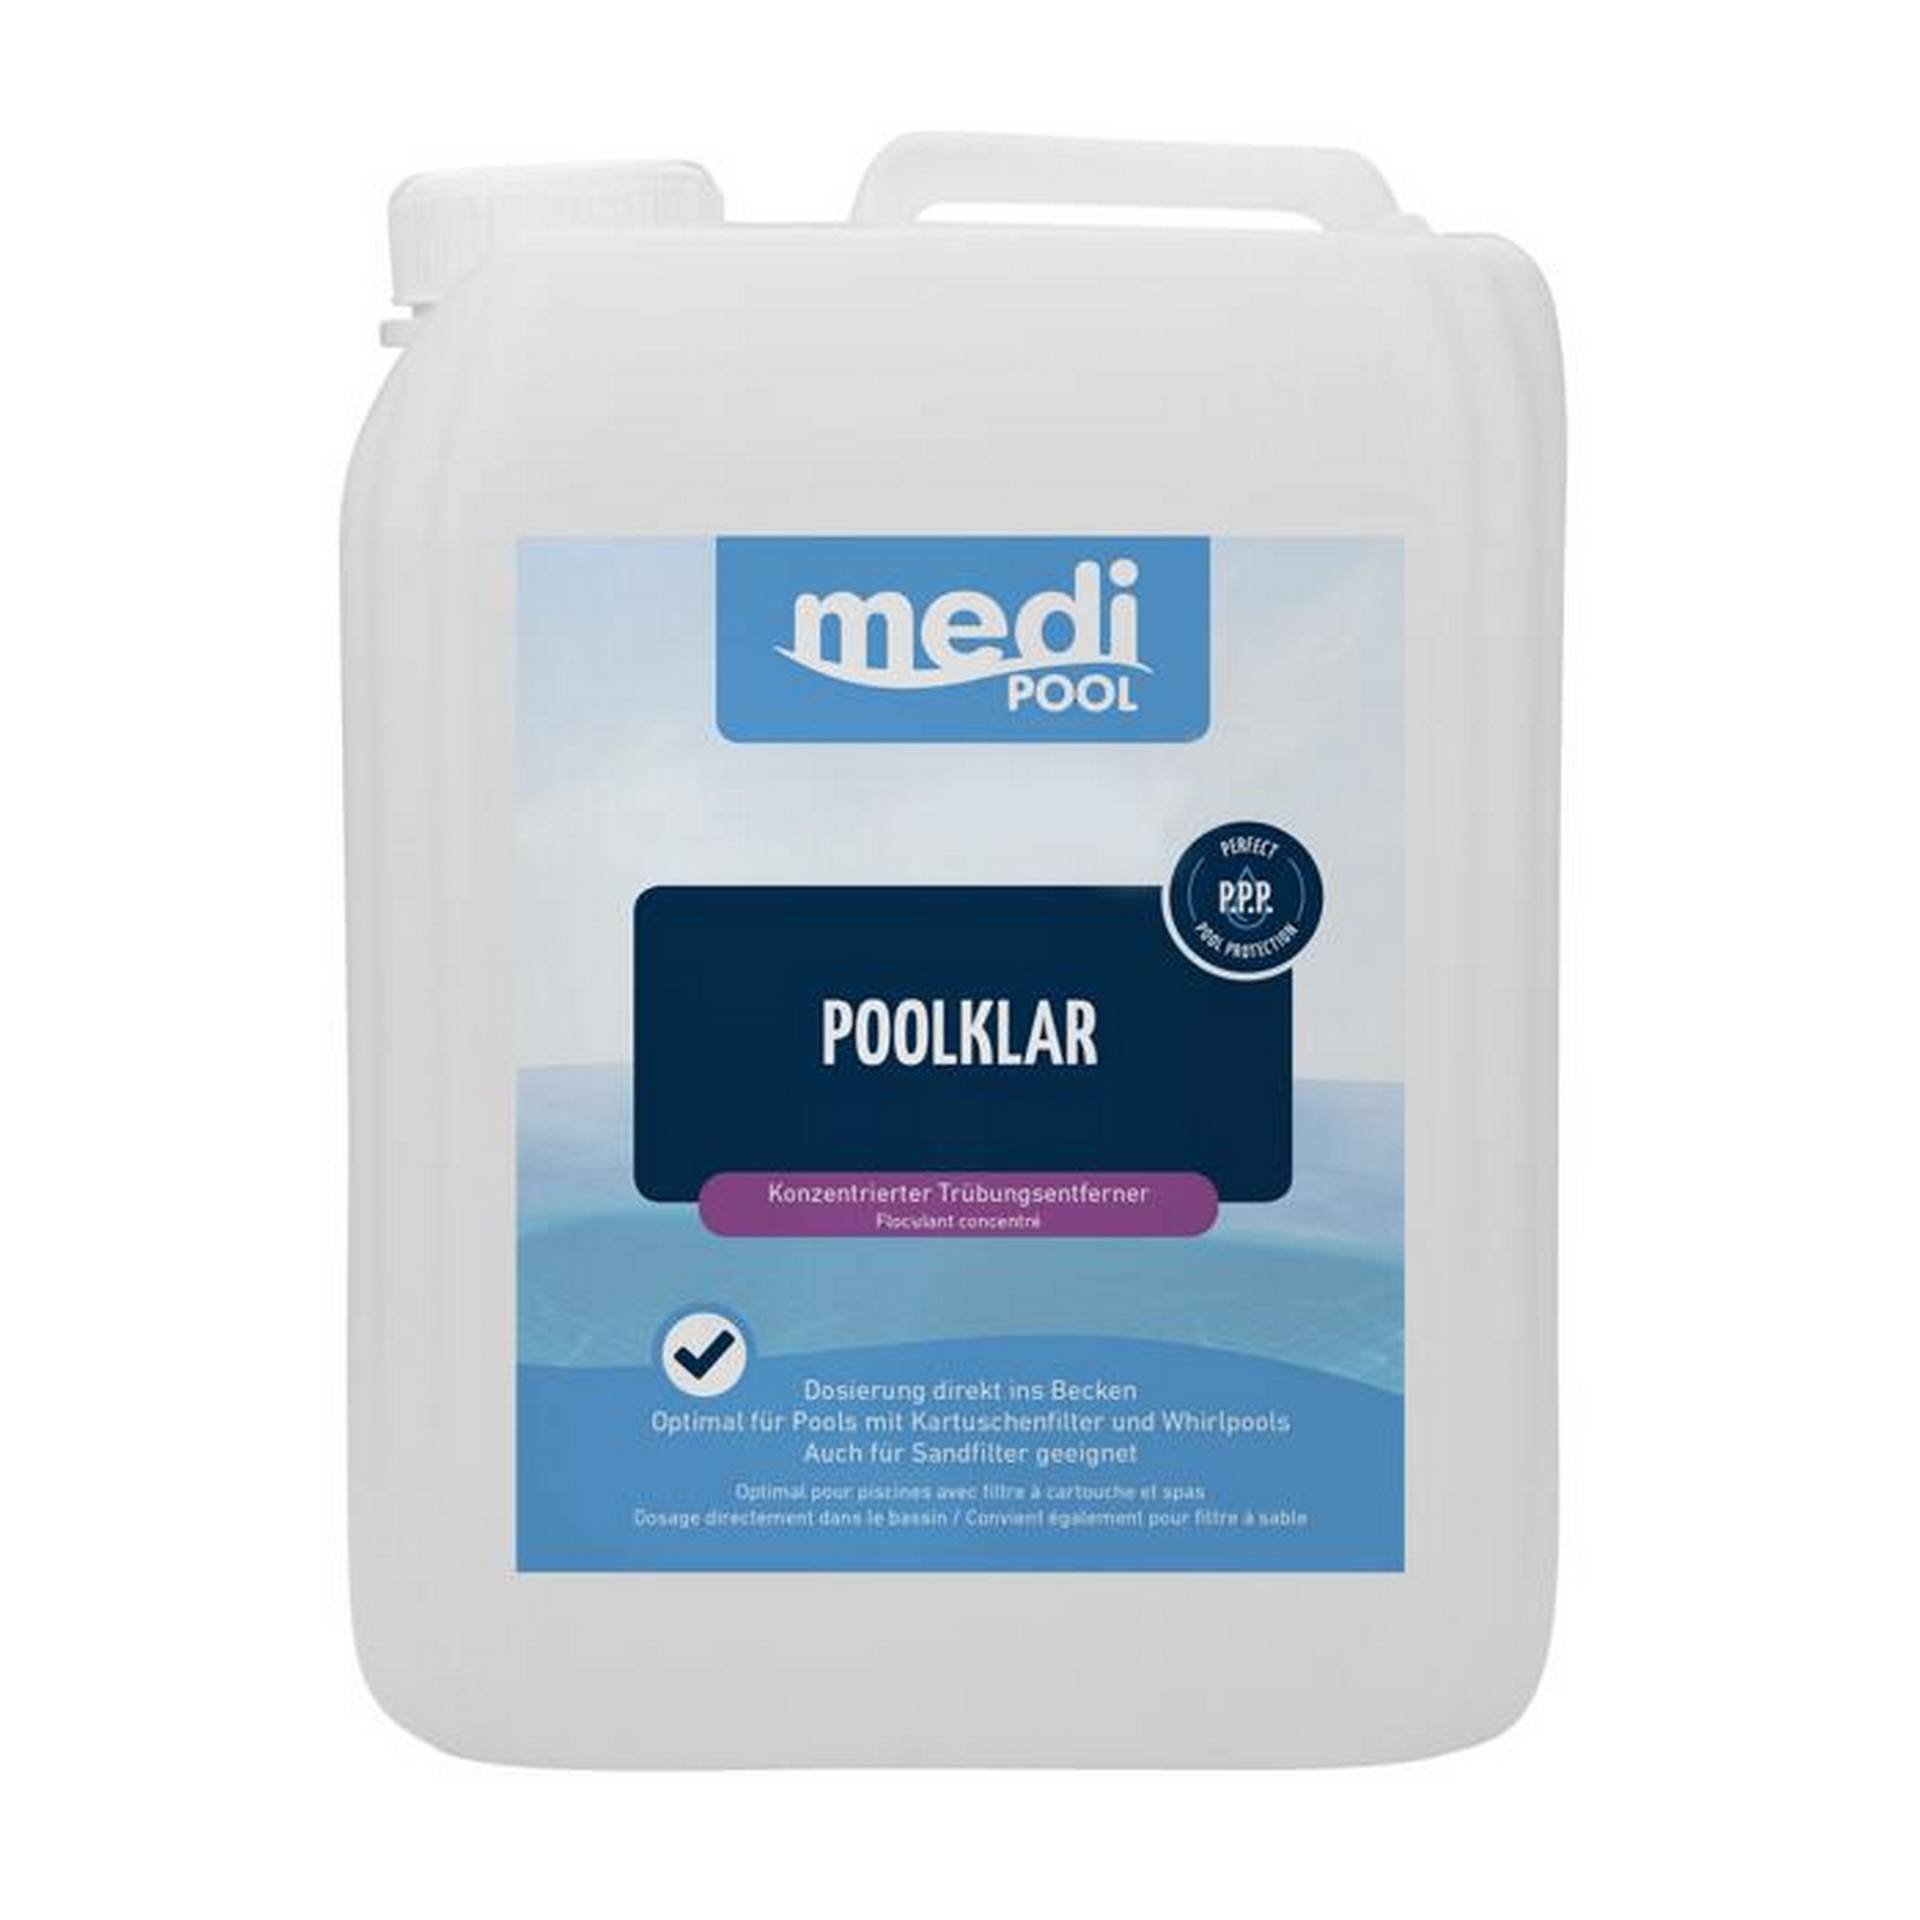 mediPOOL Poolklar-Konzentrat 5 Liter, für die Poolpflege von mediPOOL